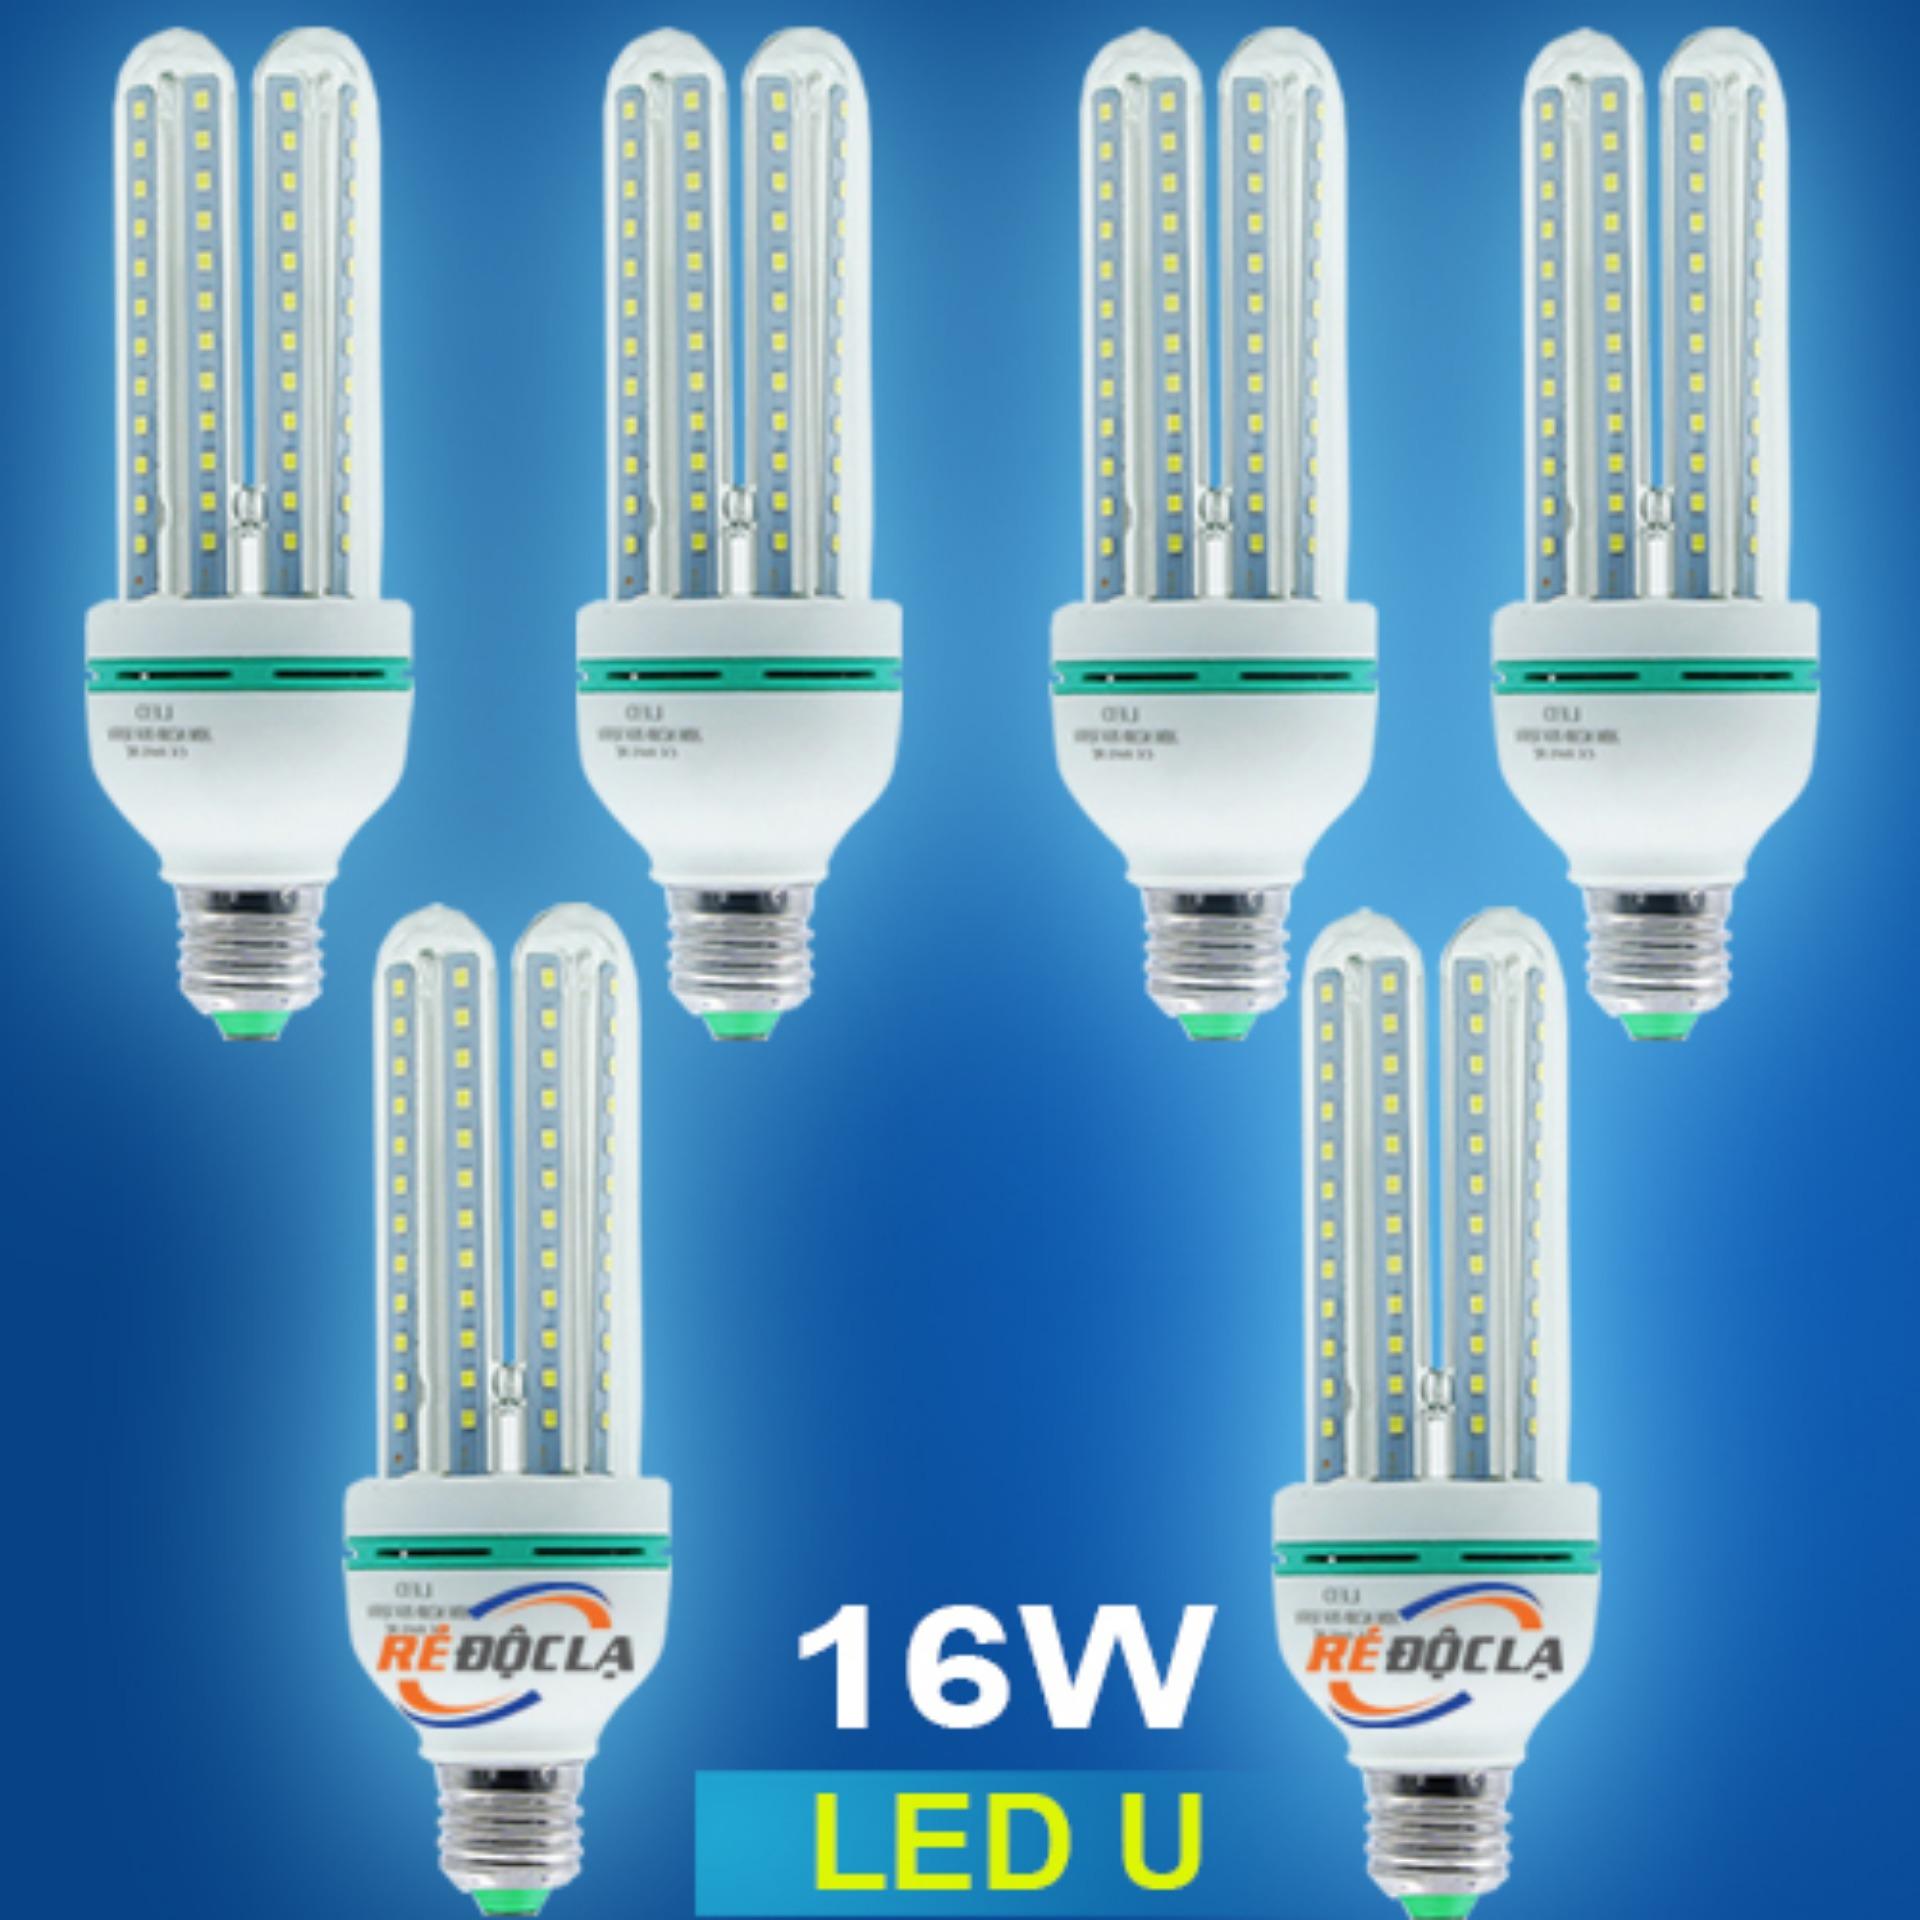 Bộ 6 Bóng Đèn LED U công suất 16W ( Ánh sángTrắng )- Better Shop